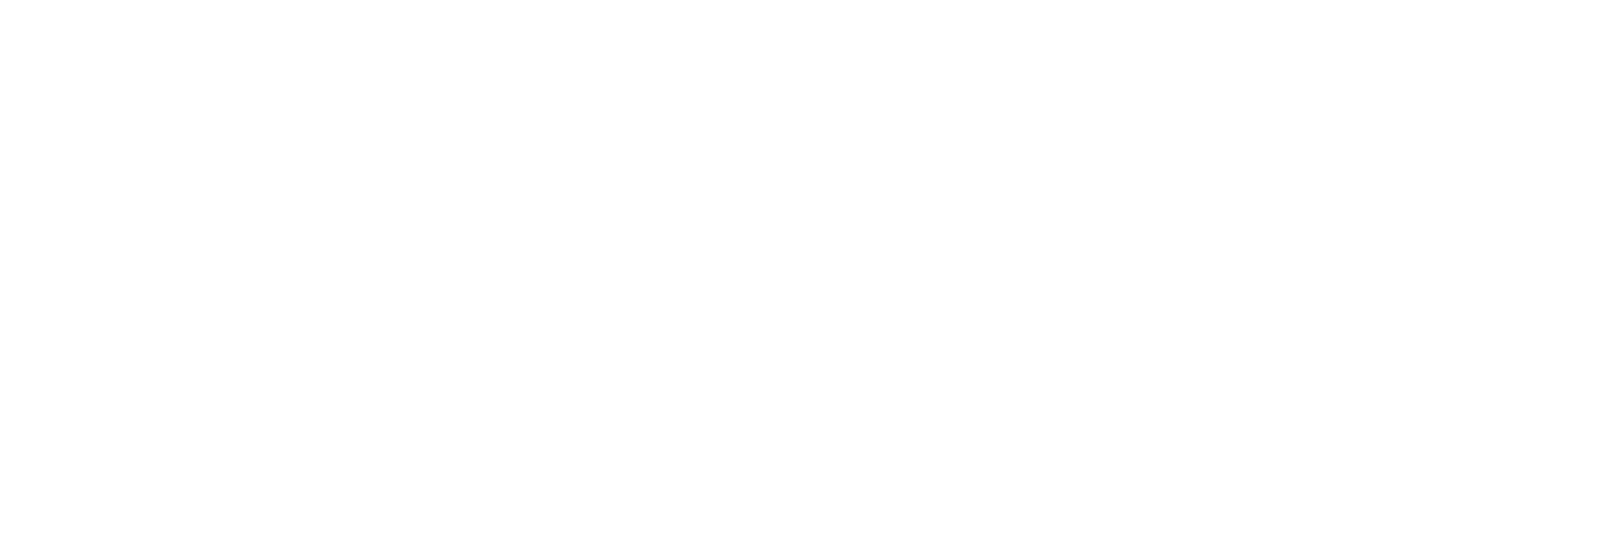 Semapa logo grand pour les fonds sombres (PNG transparent)